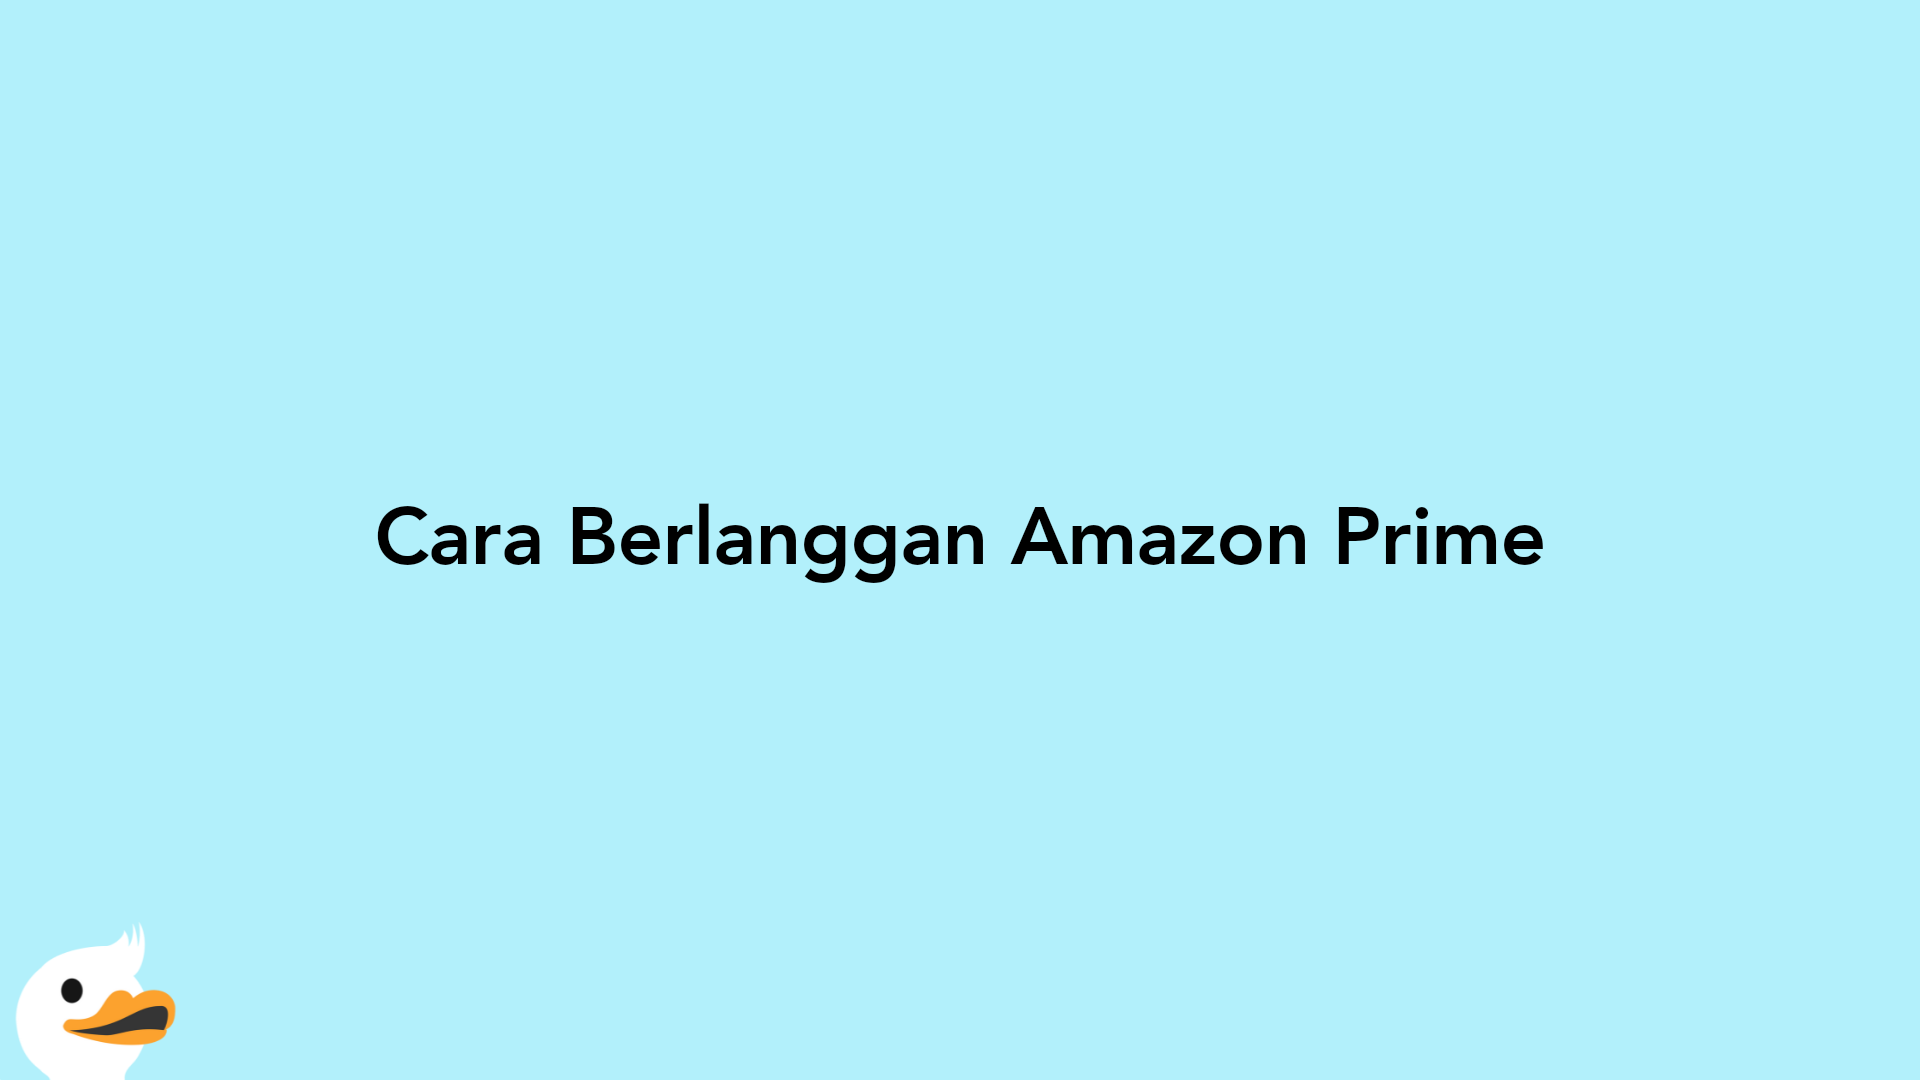 Cara Berlanggan Amazon Prime